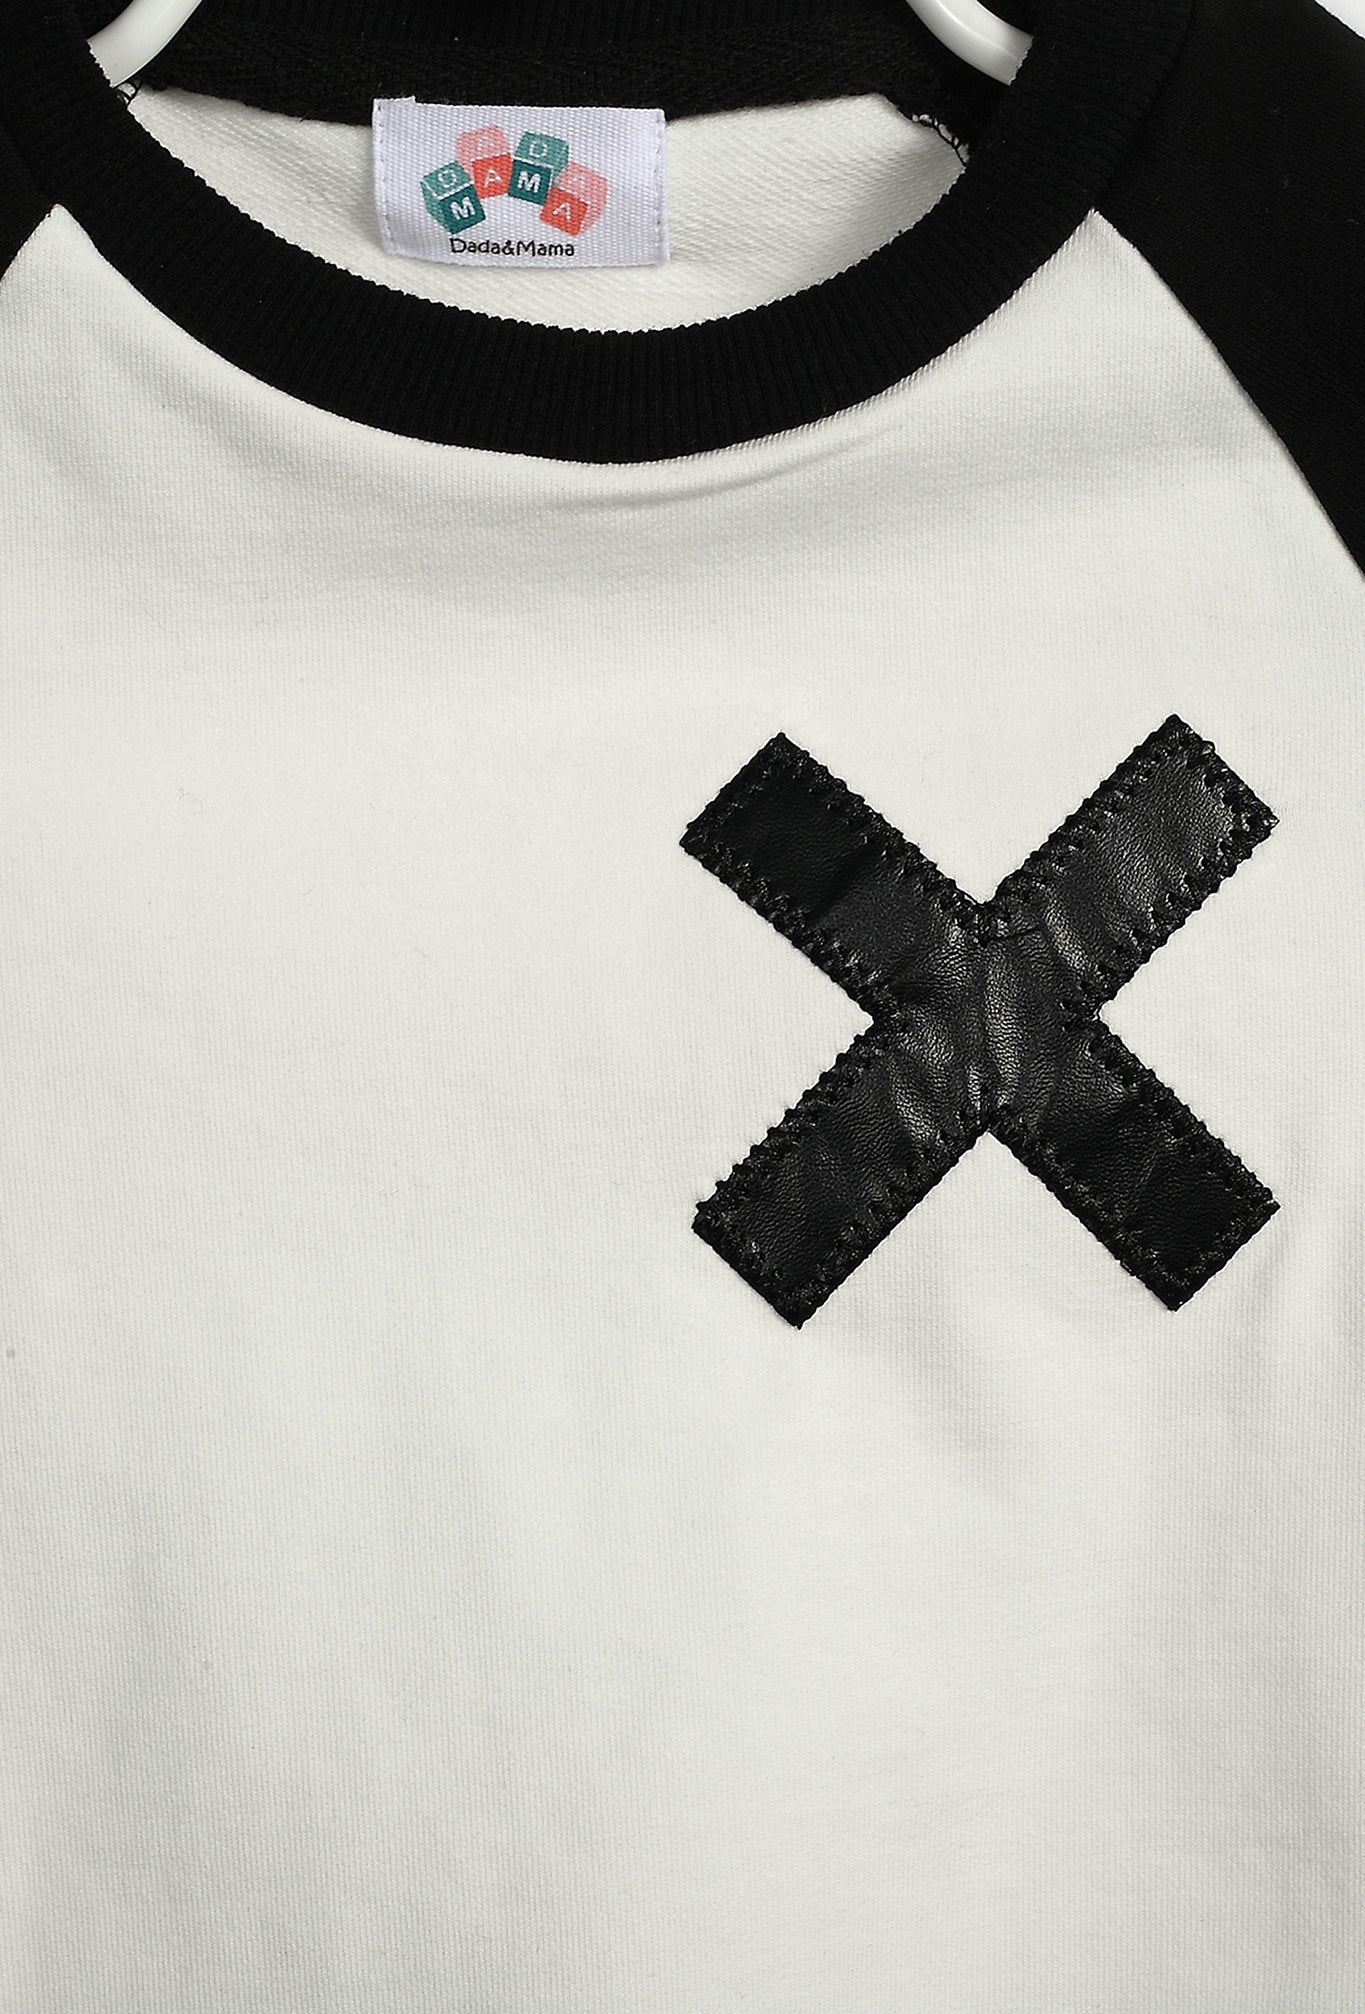 X black and white shirt